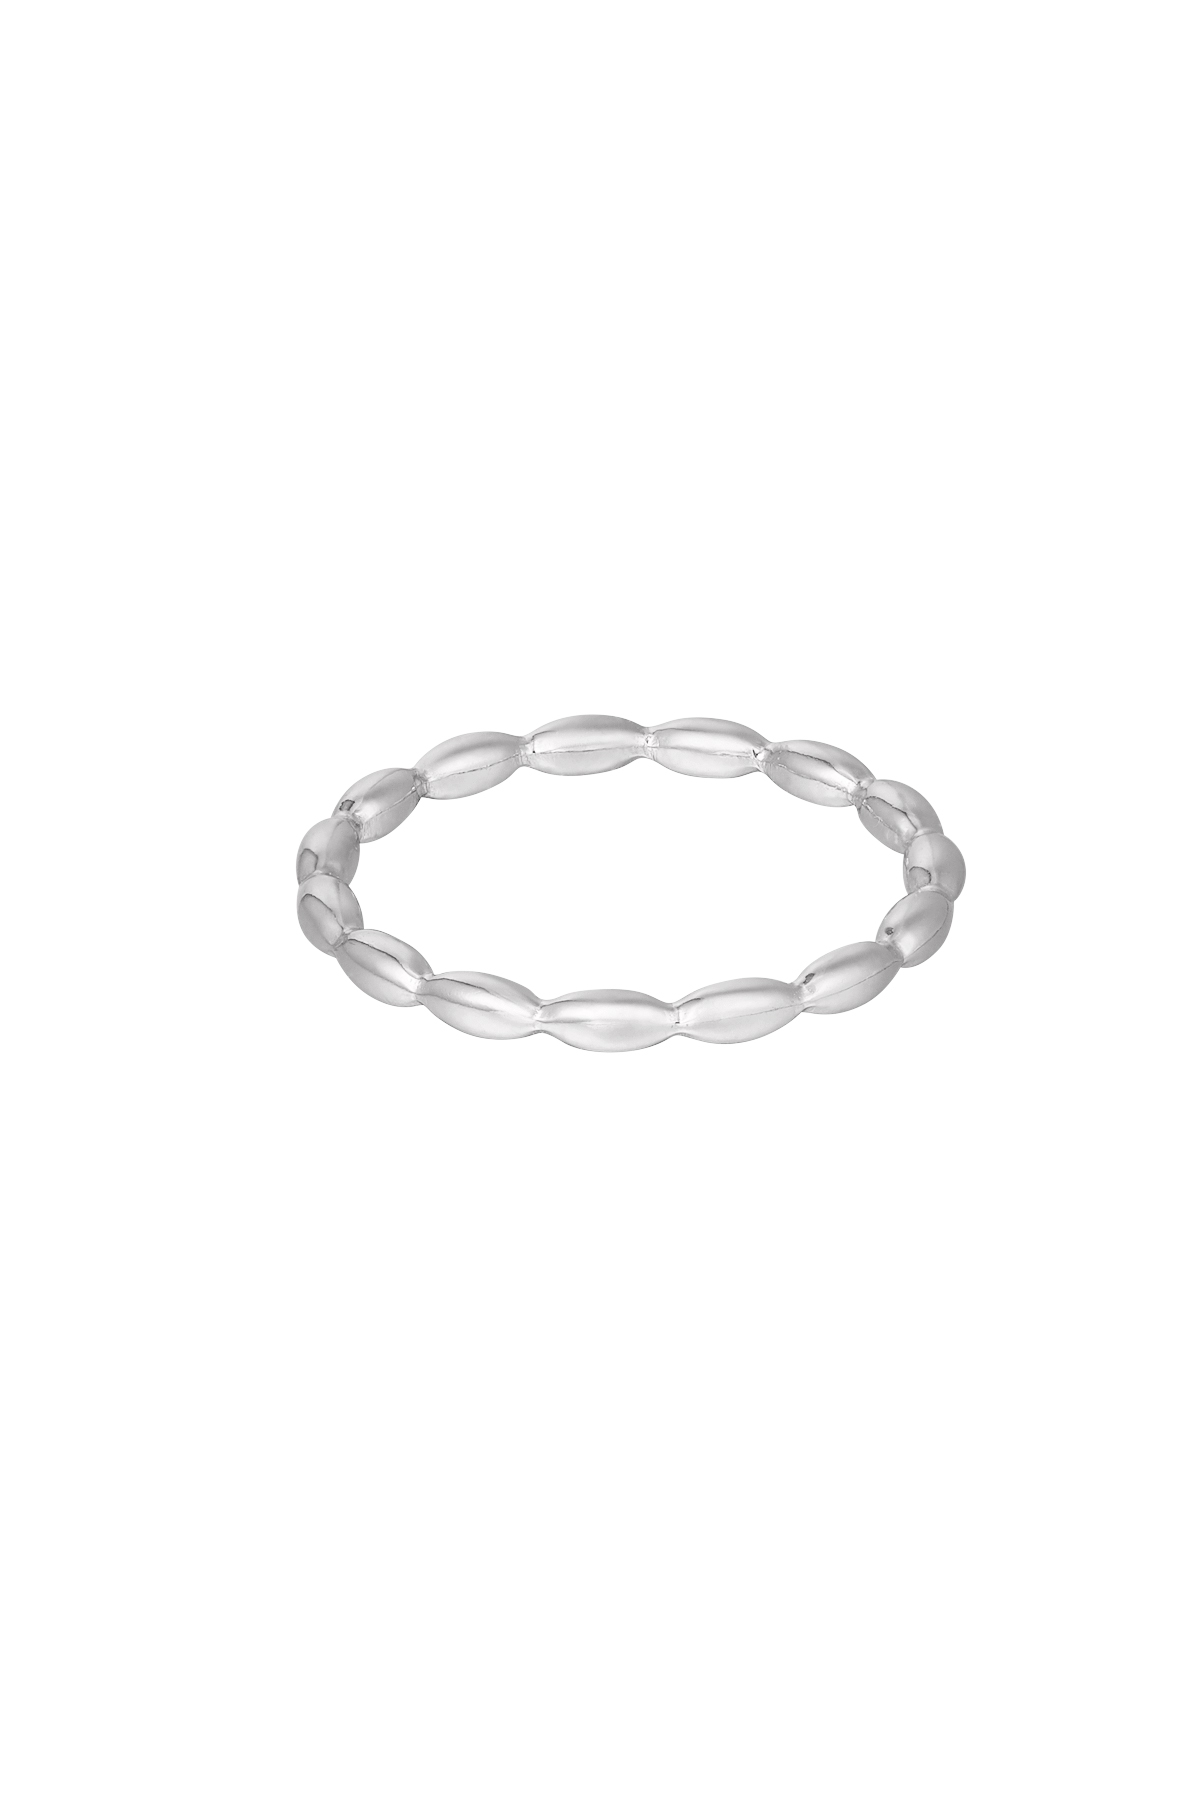 Ring verbonden ovalen - zilver h5 